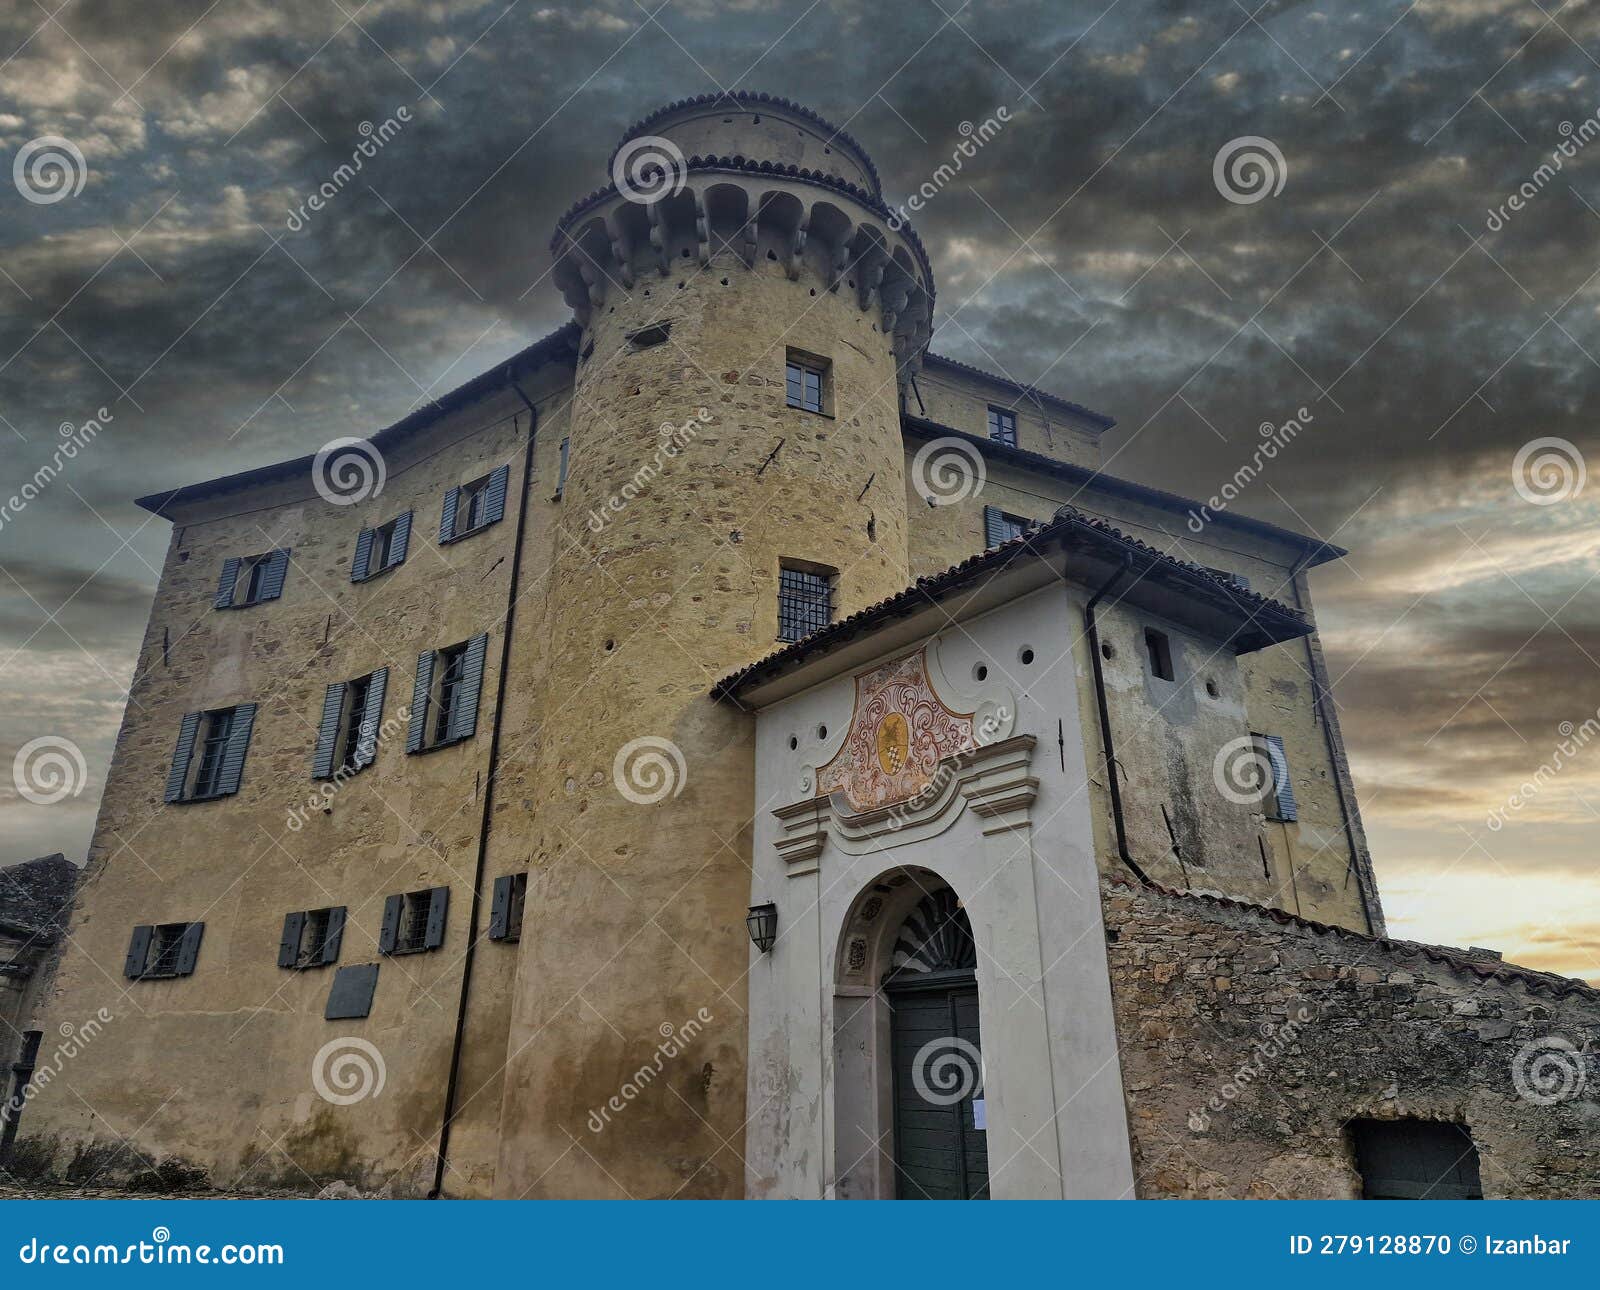 medieval village of borgo adorno castle, piedmont, italy